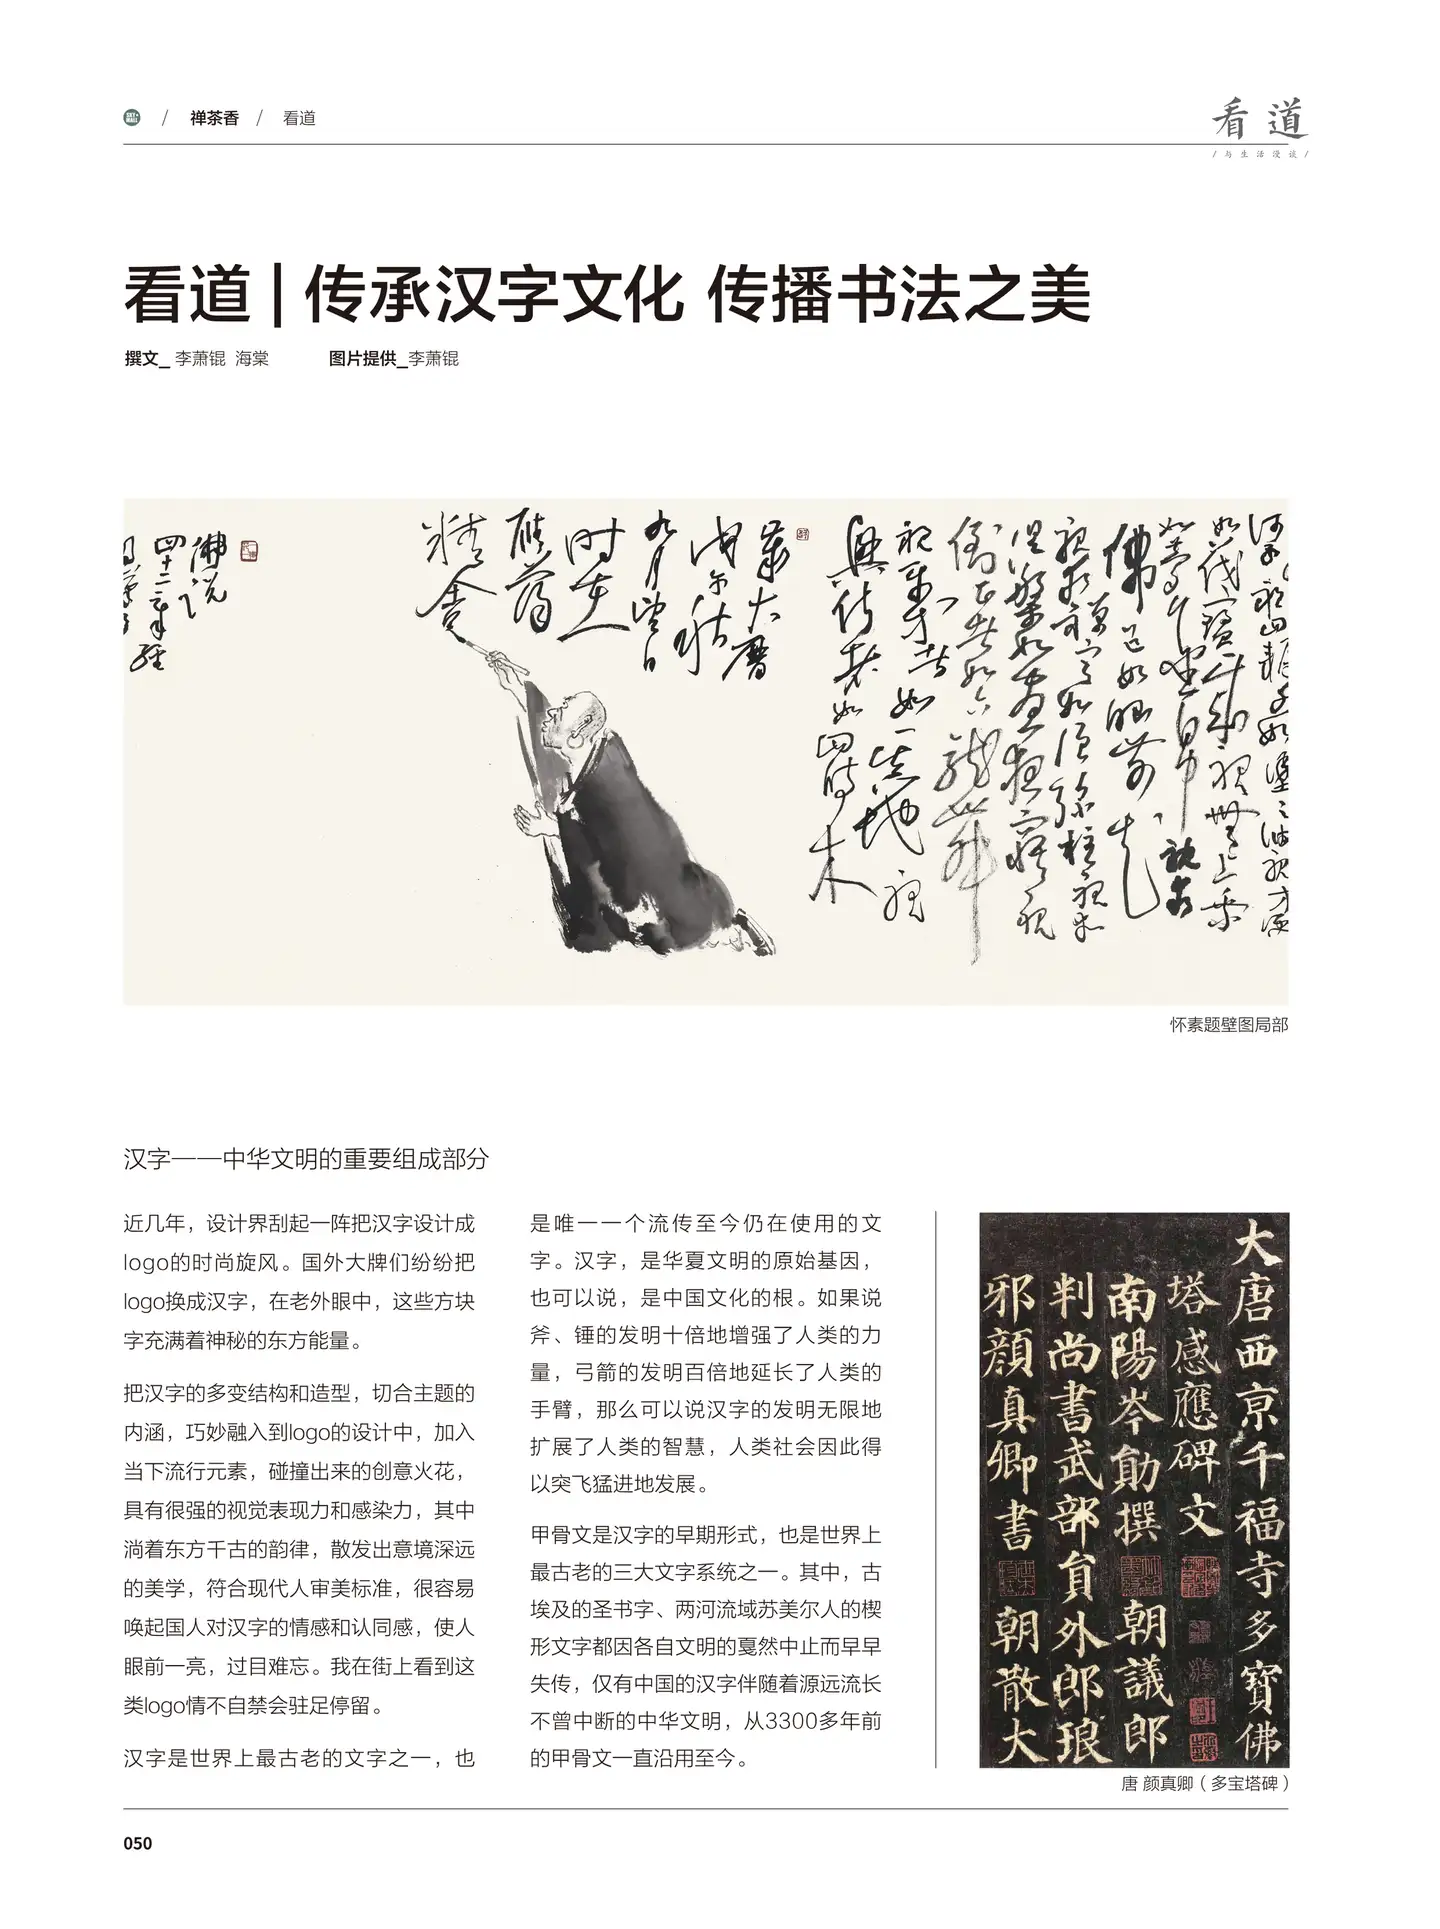 看道| 传承汉字文化，传播书法之美- 知乎 image